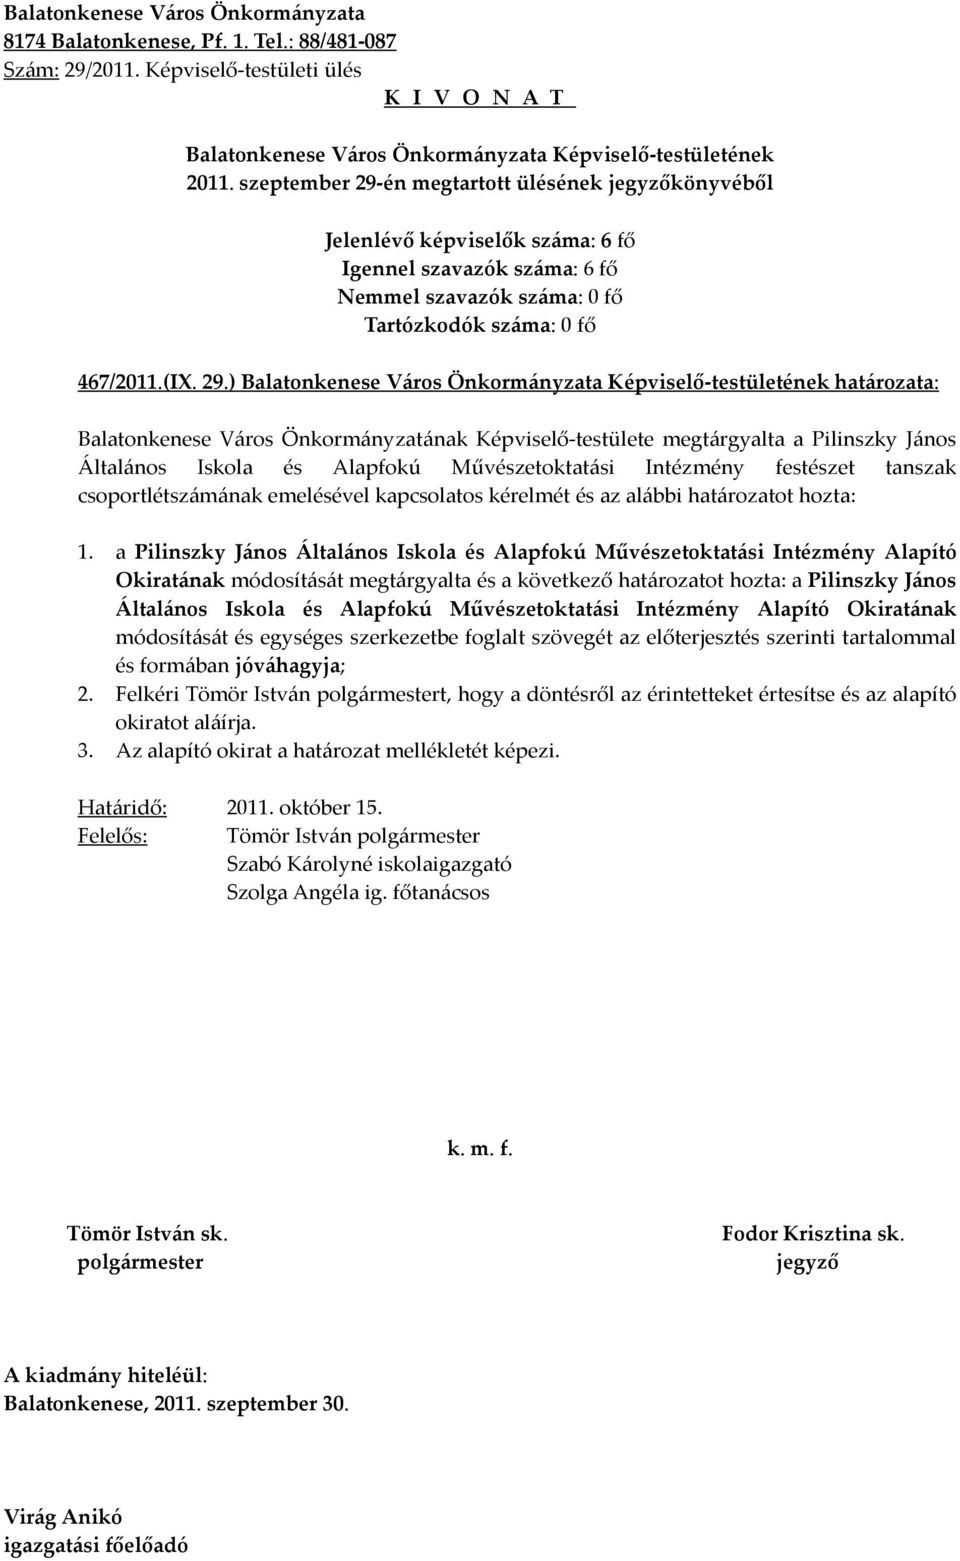 ) határozata: Balatonkenese Város Önkormányzatának Képviselő-testülete megtárgyalta a Pilinszky János Általános Iskola és Alapfokú Művészetoktatási Intézmény festészet tanszak csoportlétszámának